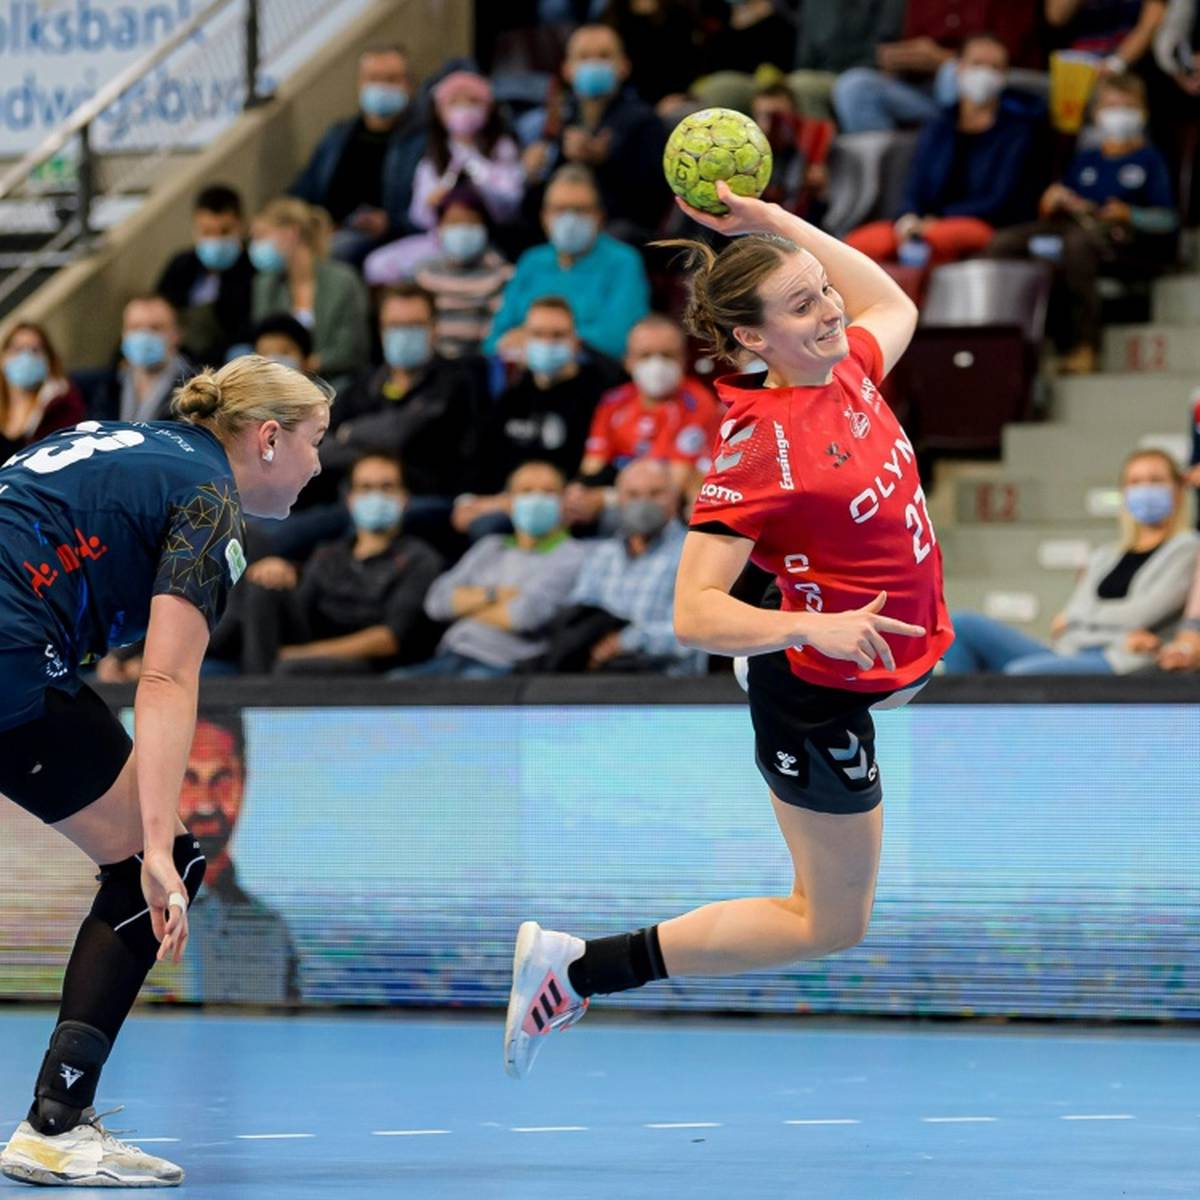 Handball-Nationalspielerin Julia Maidhof bleibt dem deutschen Vizemeister SG BBM Bietigheim mindestens ein weiteres Jahr erhalten.